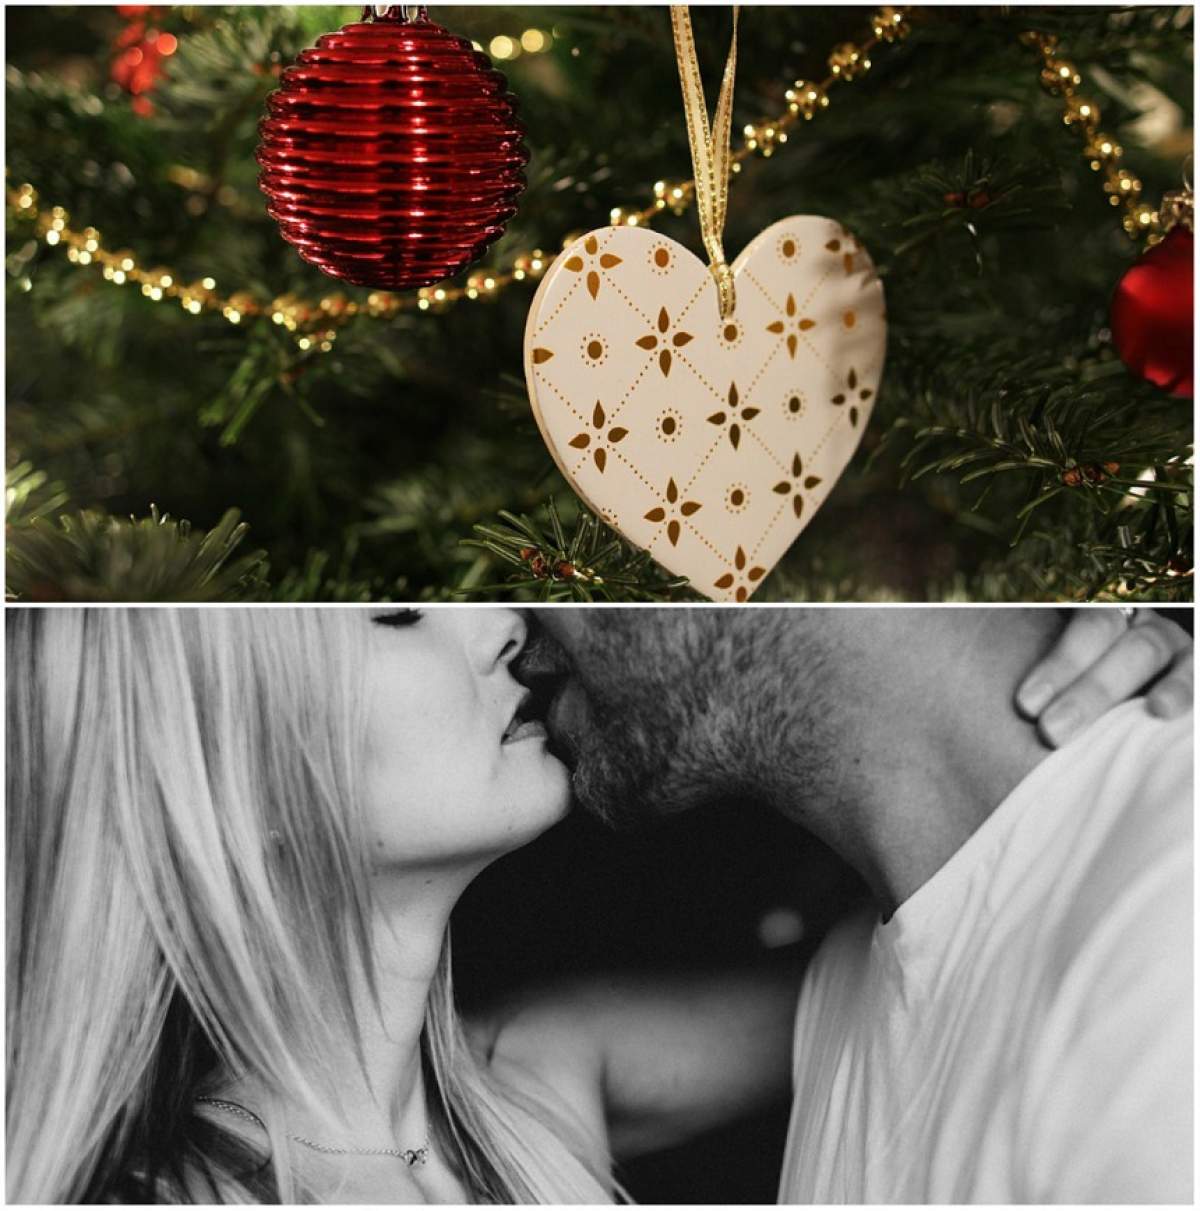 Cele mai interesante poziţii de sex pentru noaptea de Crăciun! Oferă-i iubitului clipe pline de romantism